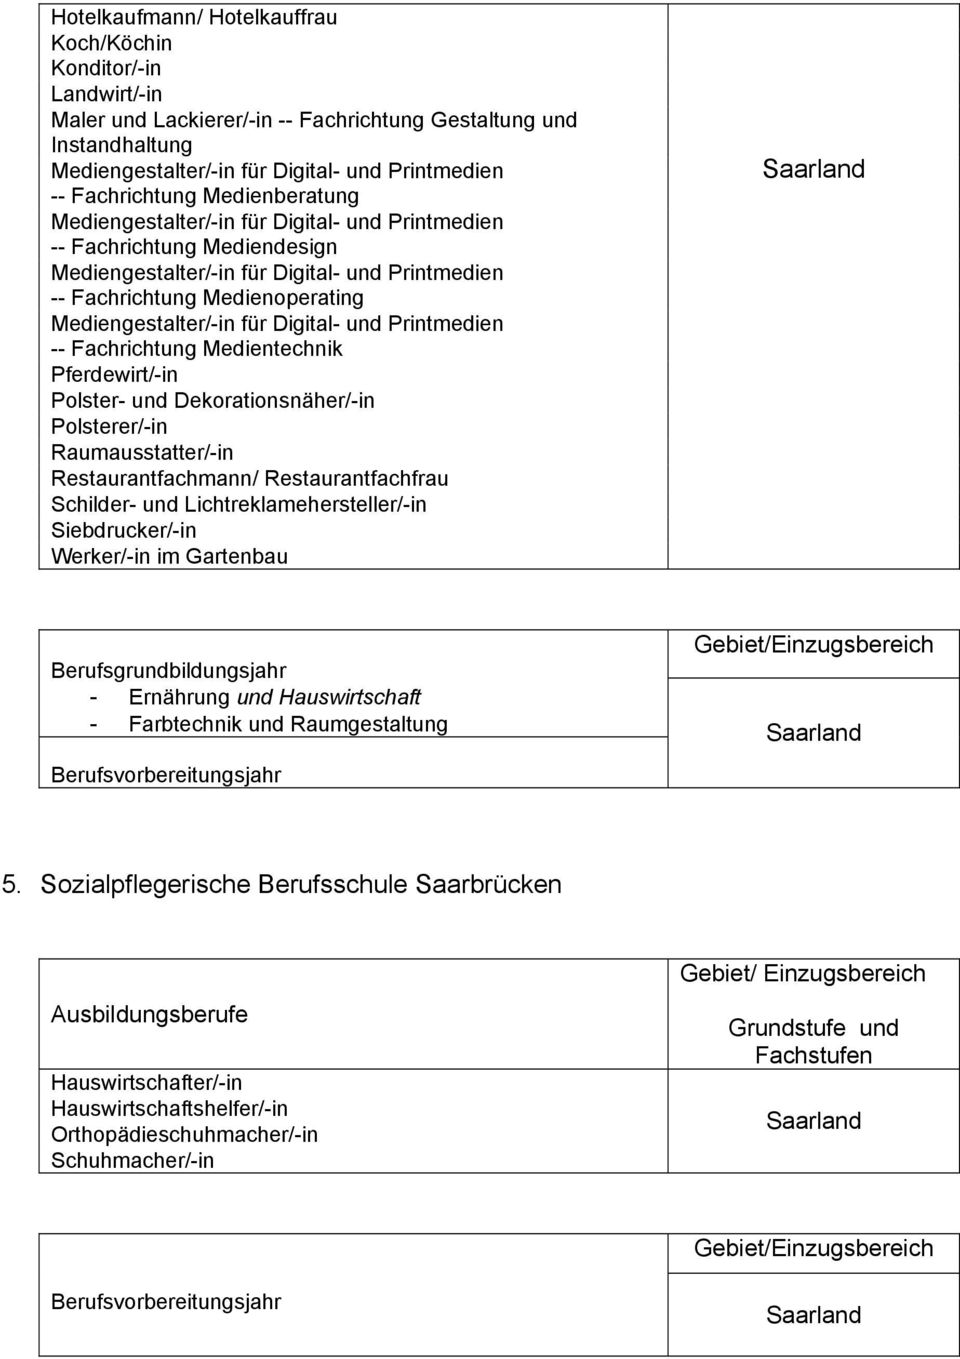 Polsterer/-in Raumausstatter/-in Restaurantfachmann/ Restaurantfachfrau Schilder- und Lichtreklamehersteller/-in Siebdrucker/-in Werker/-in im Gartenbau - Ernährung